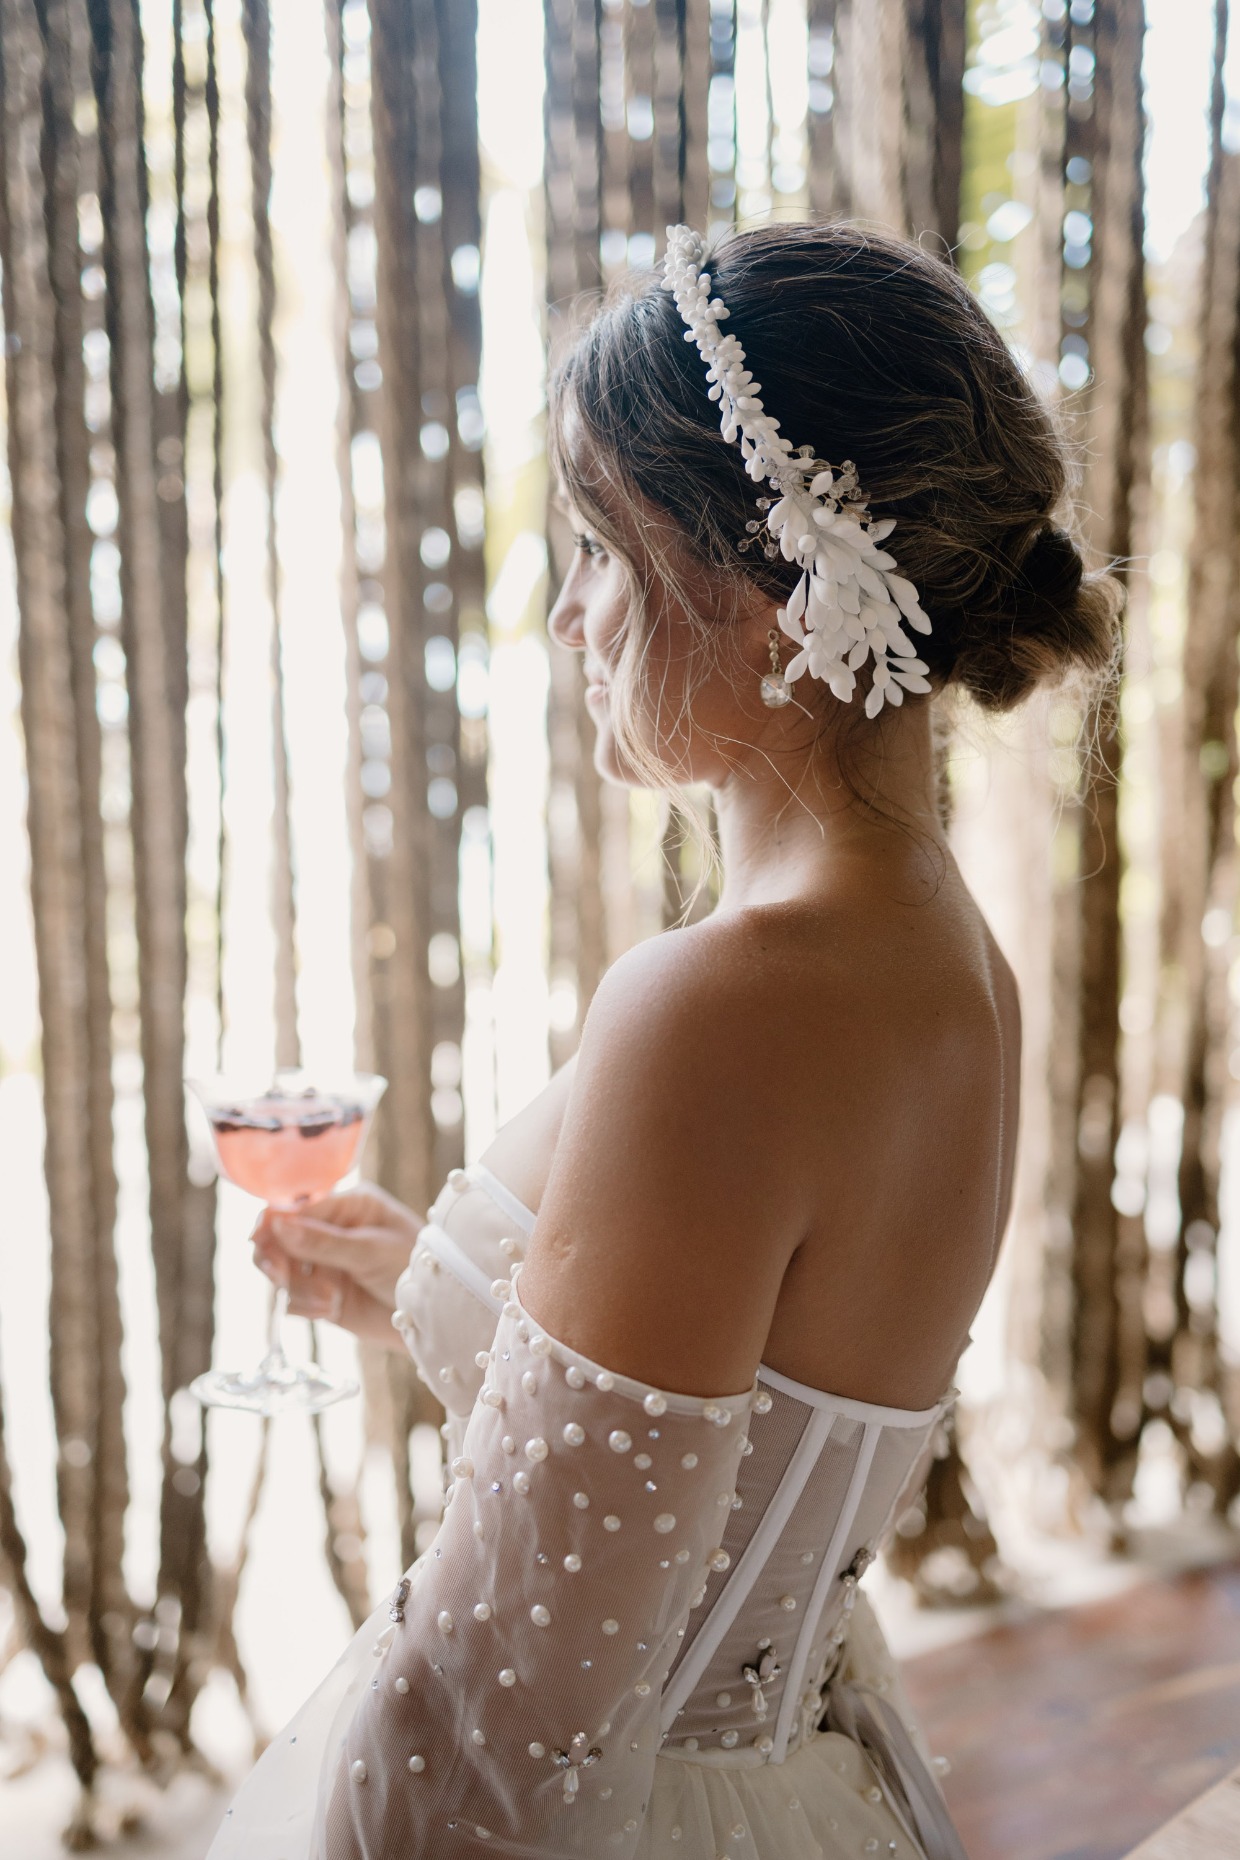 bride drinking wedding cocktail